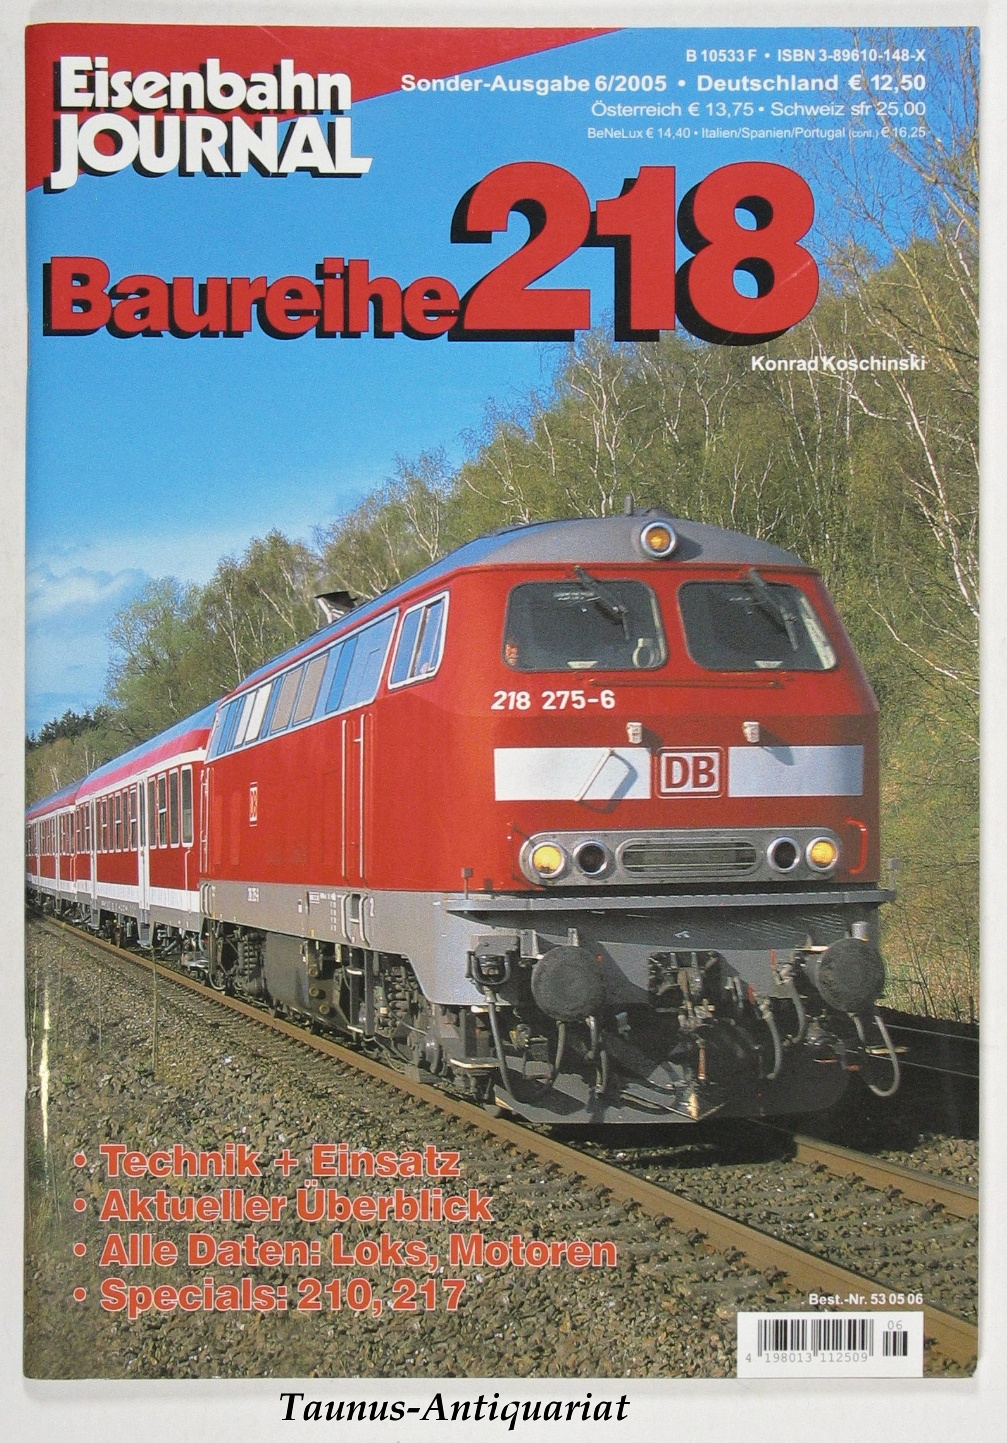 Baureihe 218 : Technik + Einsatz, aktueller Überblick. Alle Daten: Loks, Motoren, Specials; 210, 217. Eisenbahn-Journal / Sonderausgabe 6/2005. - Koschinski, Konrad